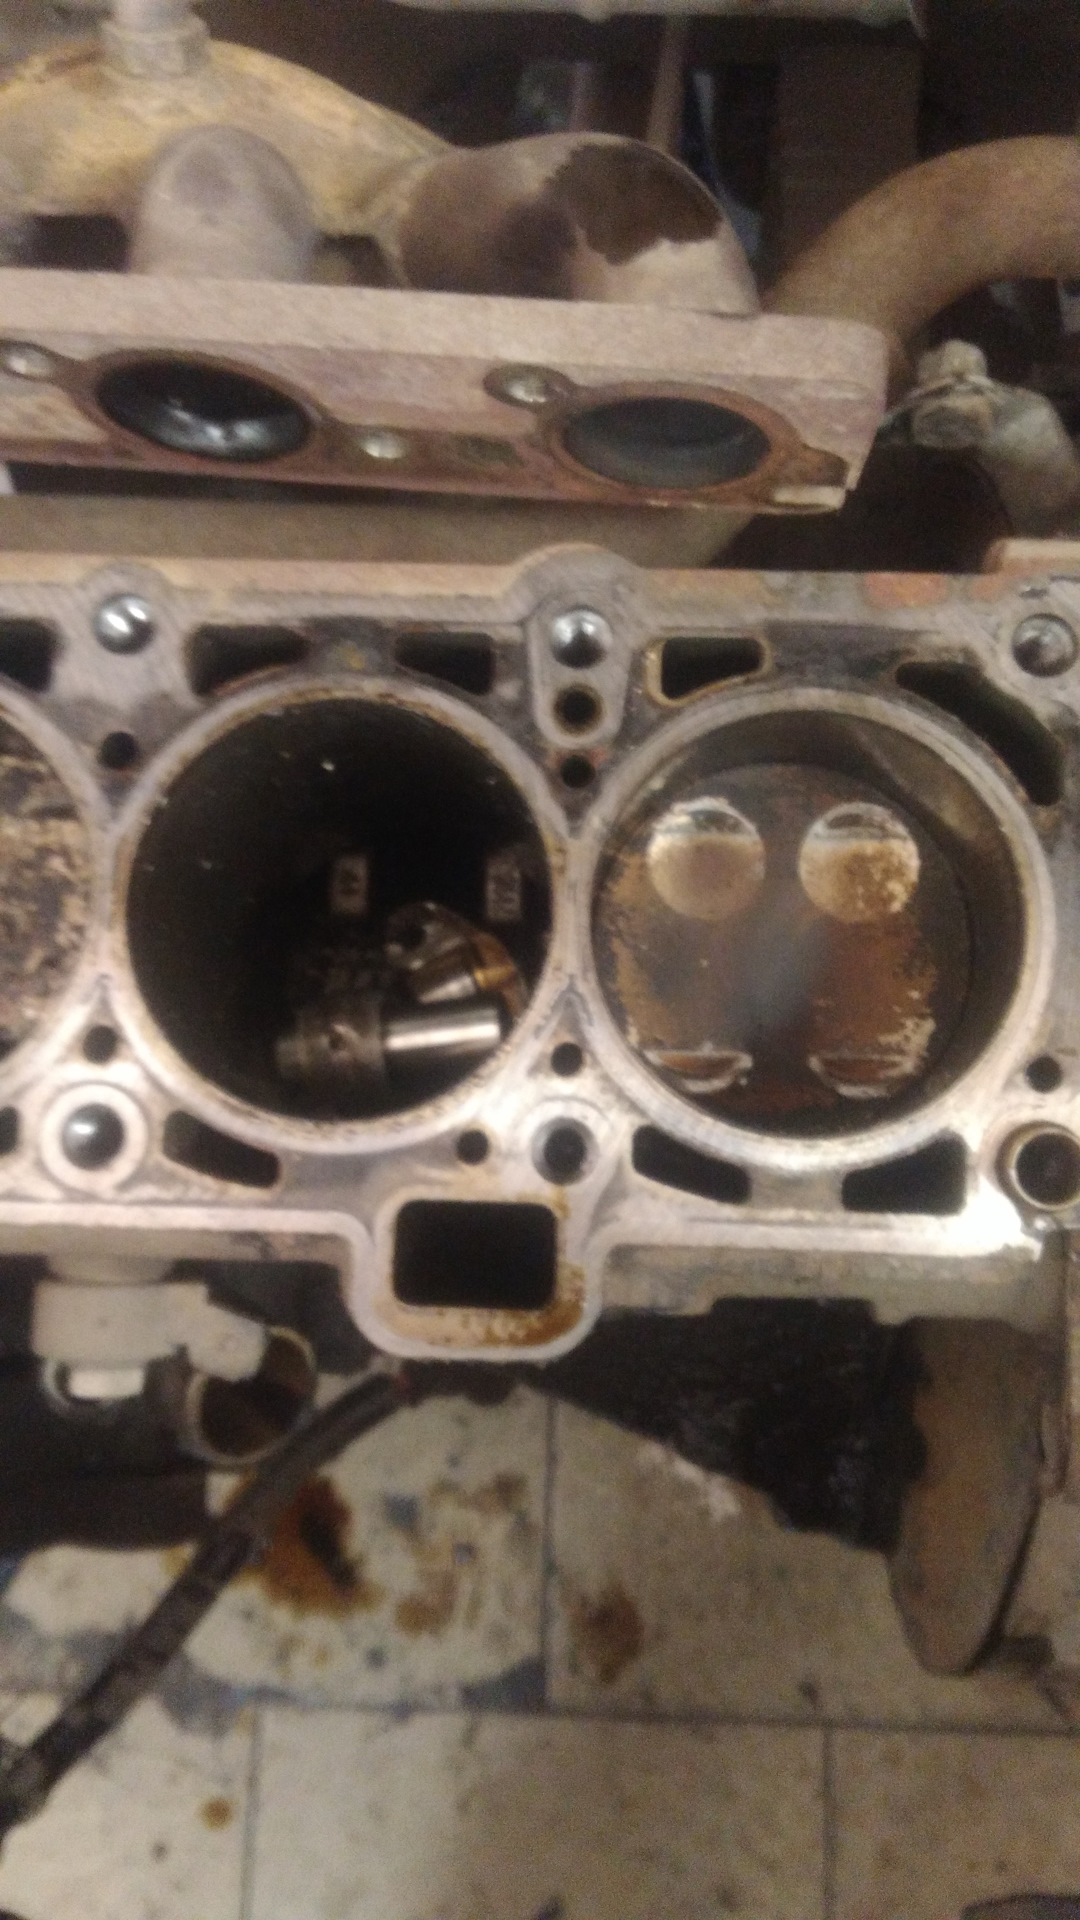 Гранта 87 л с гнет клапана. Двигатель Гранта 8 клапанов 11186 гнет ли клапана. Погнуло клапана Гранта 8 клапанная. Загнуло клапана Приора 16 клапанов. Погнуло клапана Гранта 8 клап.